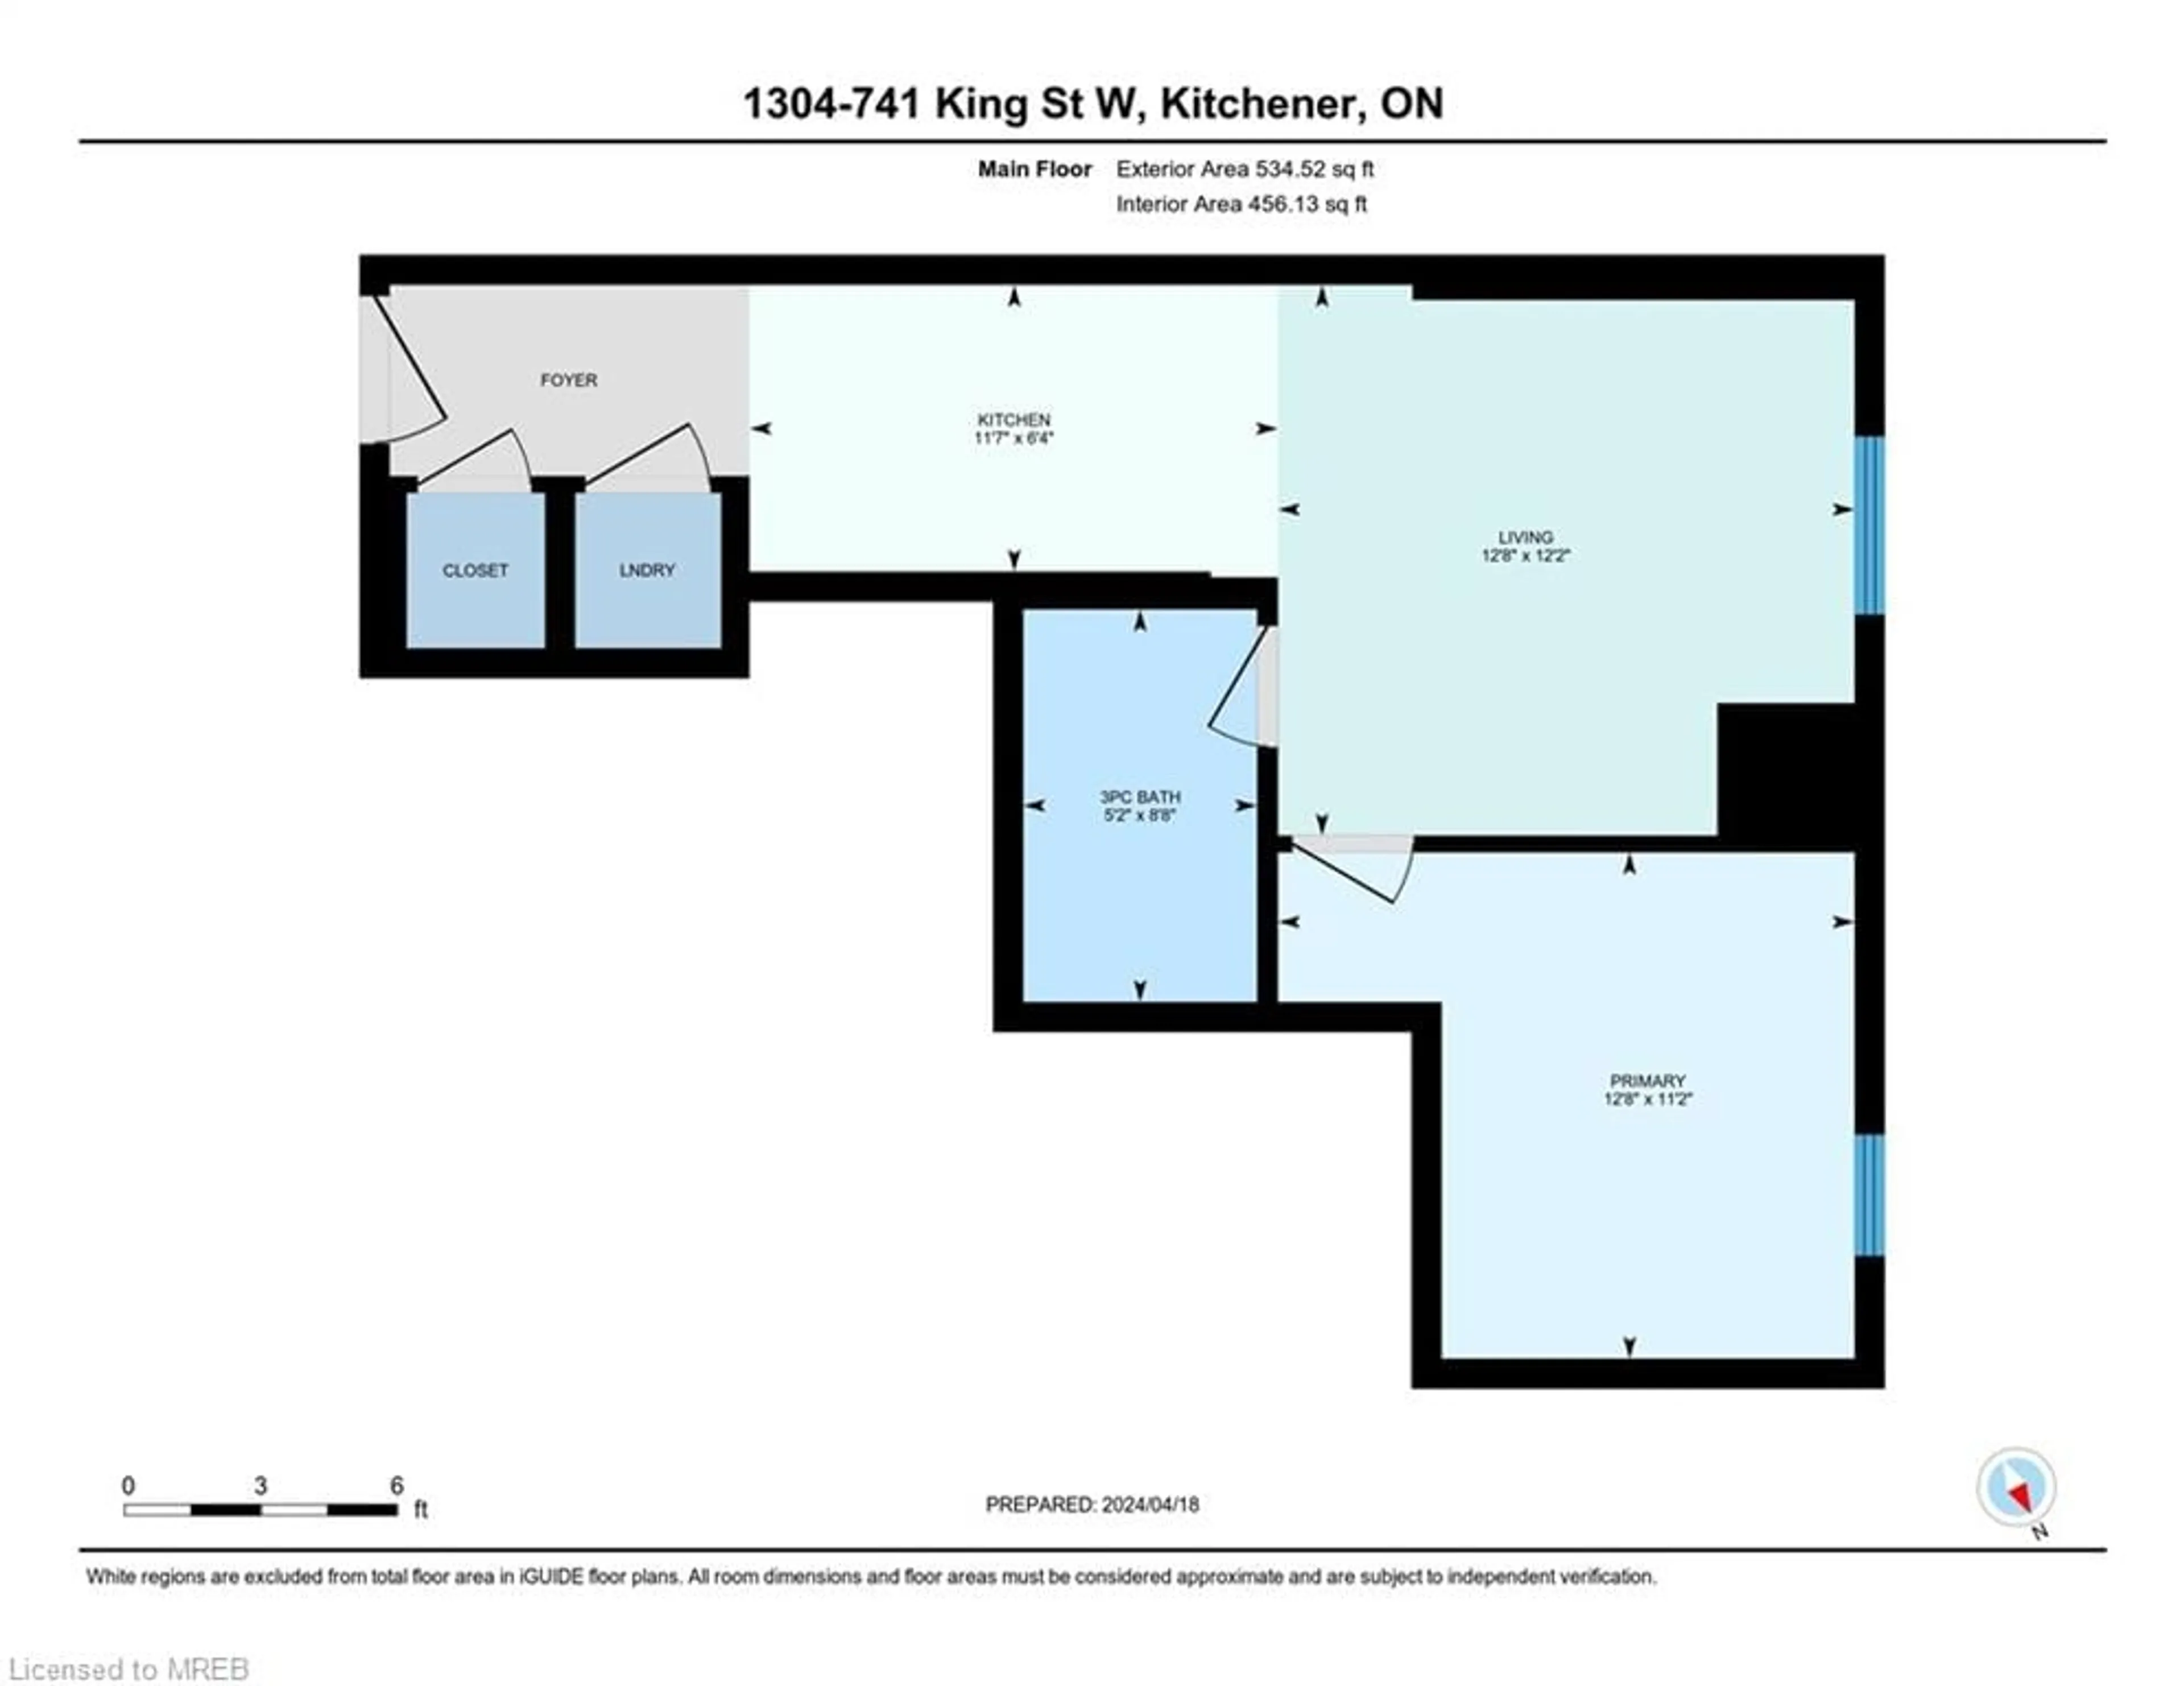 Floor plan for 741 King St #1304, Kitchener Ontario N2G 1E5